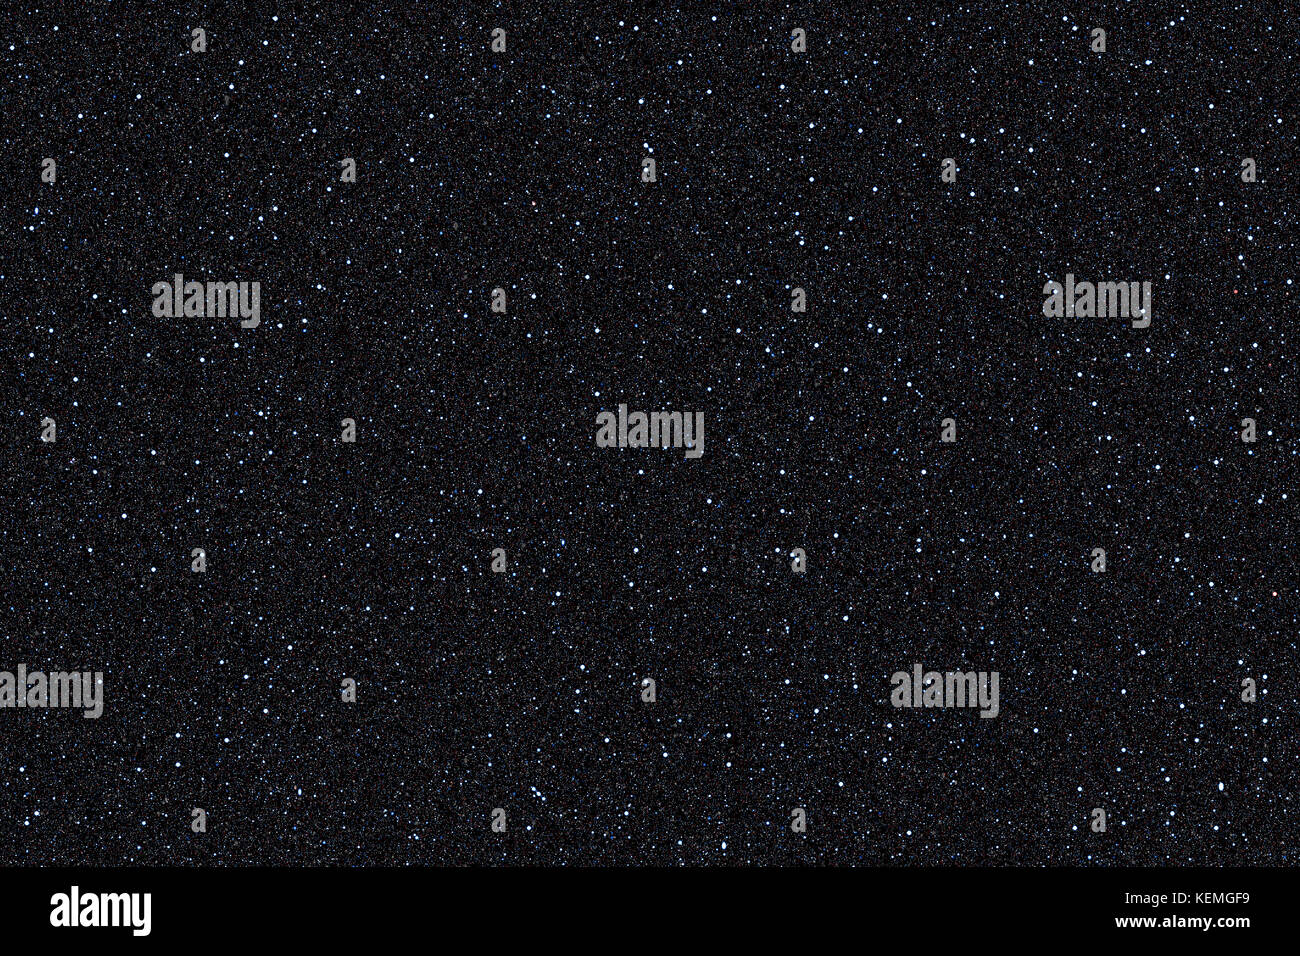 L'espace / astronomie univers sky abstract background : lot d'étoiles de différentes tailles et couleurs qui couvre la toile de fond noir peut être utilisé comme un mur Banque D'Images